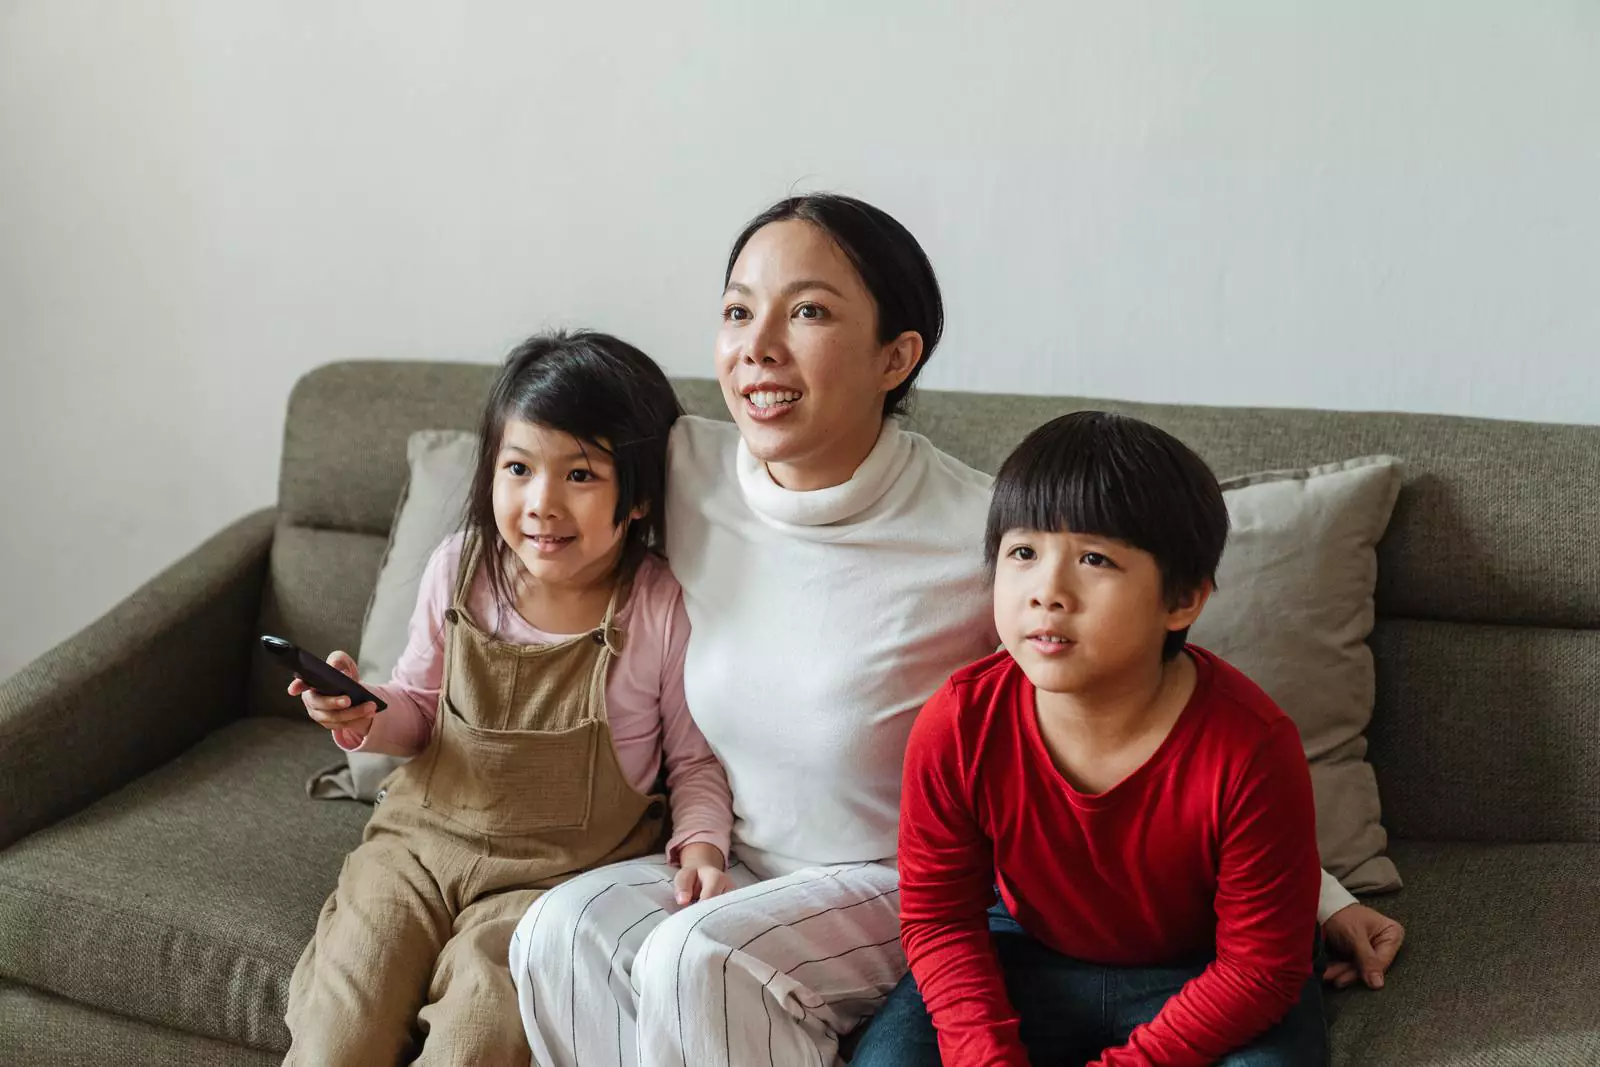 Дошкольники, которые часто разговаривали с мамами и папами во время просмотра телевизора, были наиболее любознательными в детском саду.